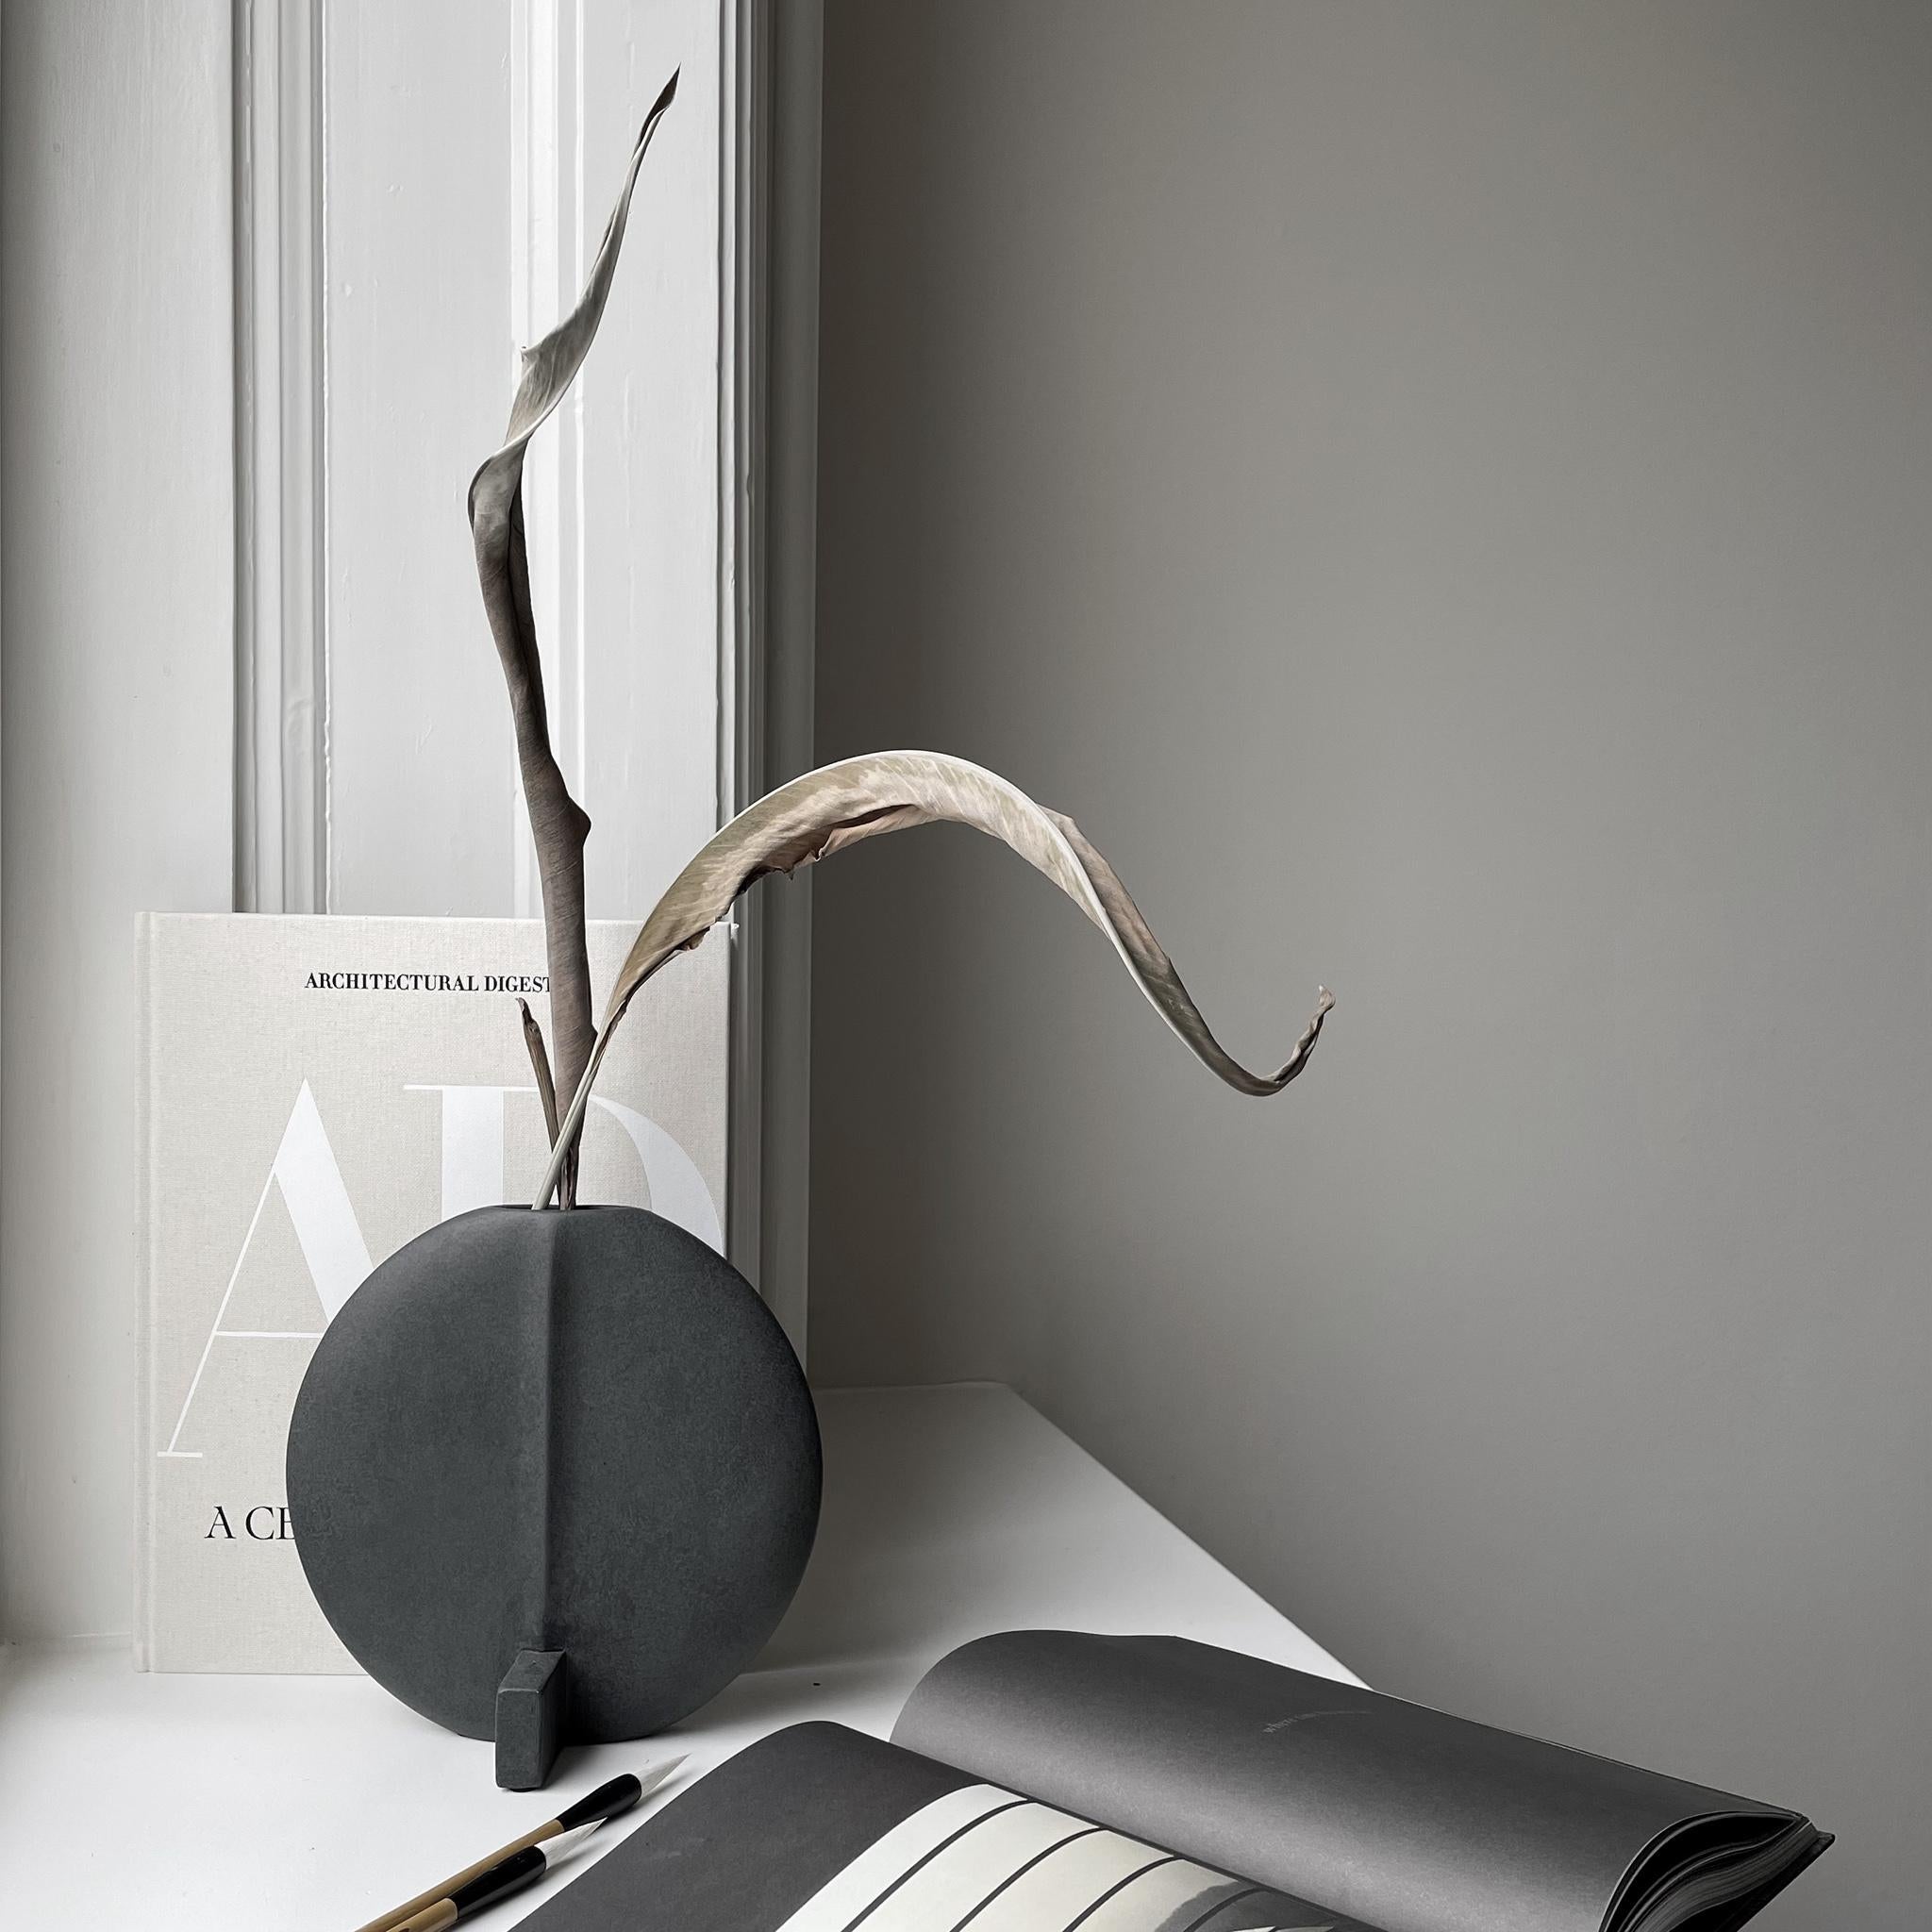 Un ensemble de 2 Guggenheim Petit noir de 101 Copenhagen
Conçu par Kristian Sofus Hansen & Tommy Hyldahl
Dimensions : L 23 / l 12 / H 23 cm
Matériaux : Céramique

Guggenheim est une série de vases sculpturaux en céramique basés sur la géométrie